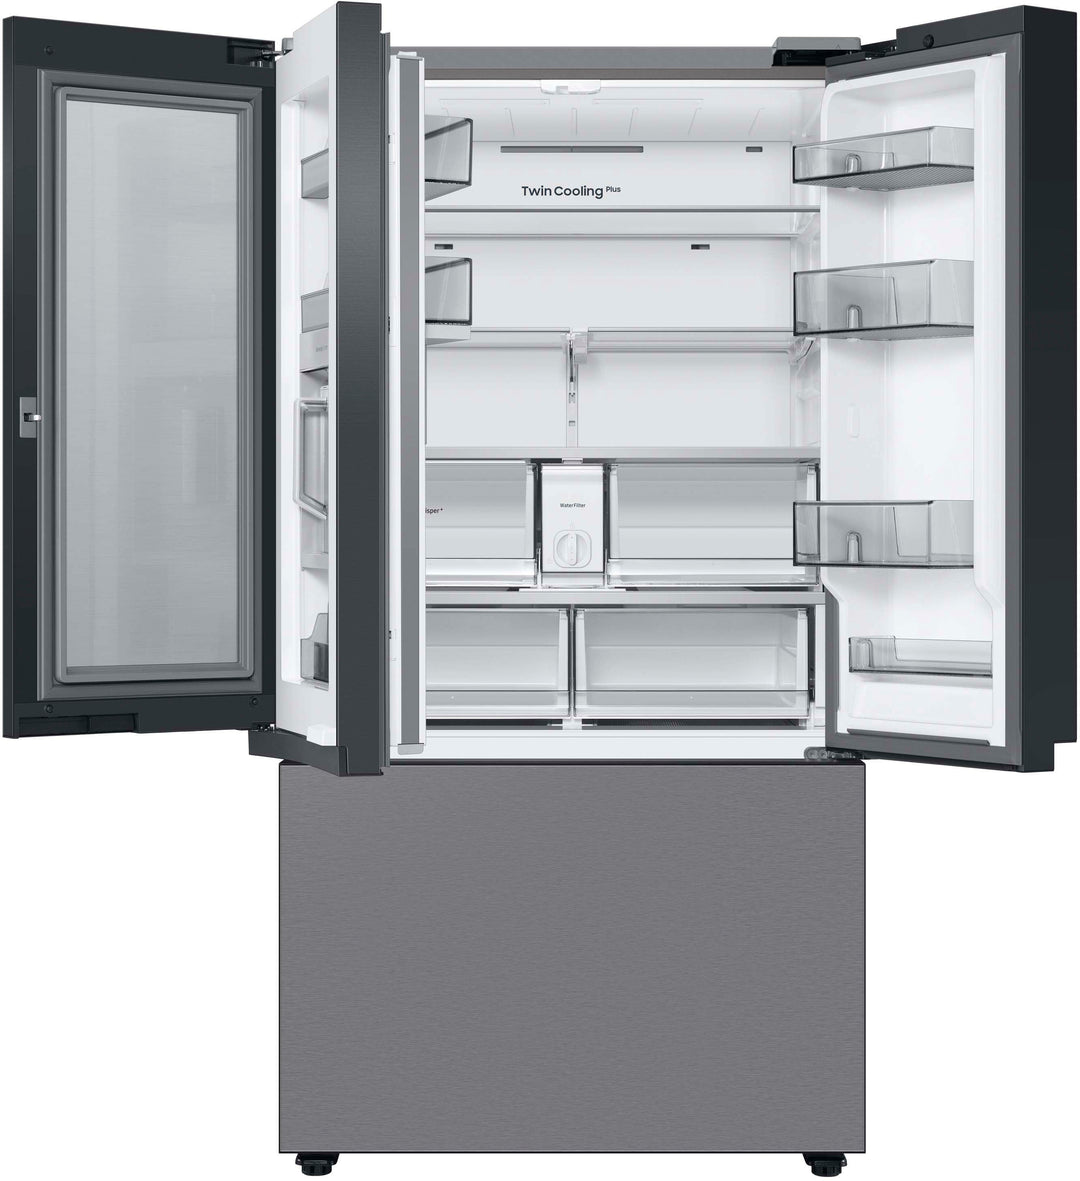 Samsung - Bespoke 30 cu. ft. 3-Door French Door Refrigerator with Beverage Center - Stainless steel_2